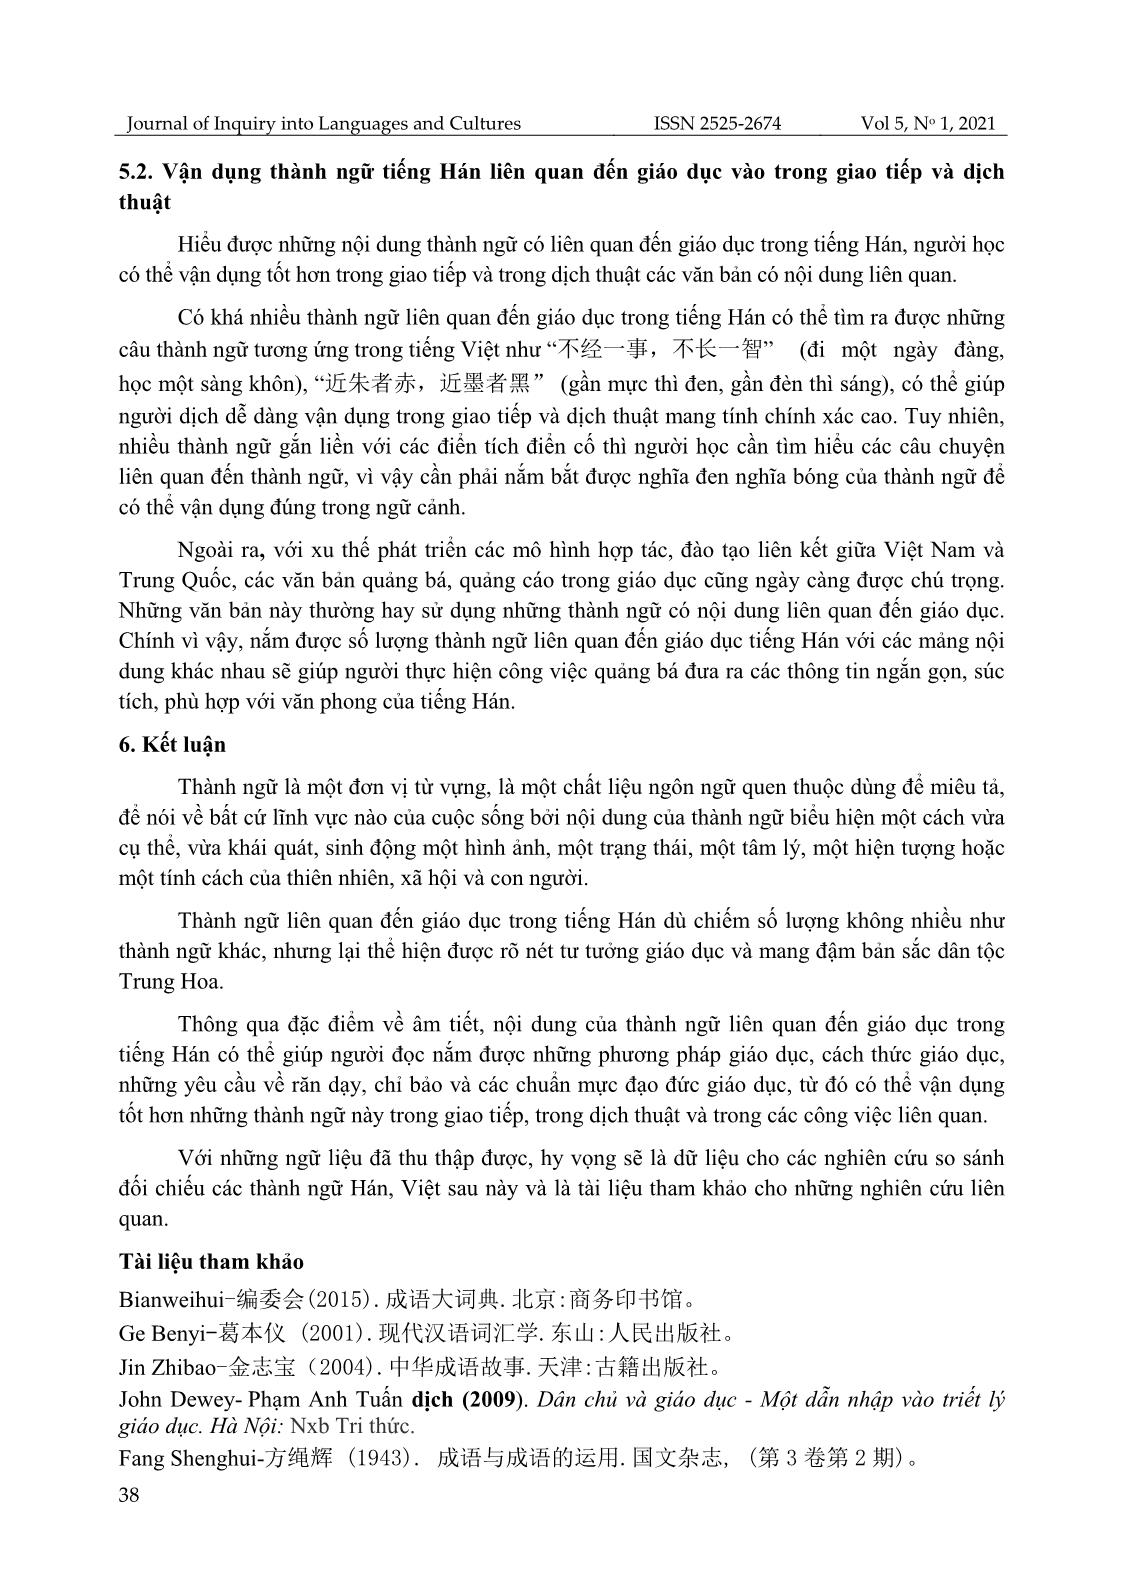 Phân tích đặc điểm thành ngữ liên quan đến giáo dục trong tiếng Hán trang 9